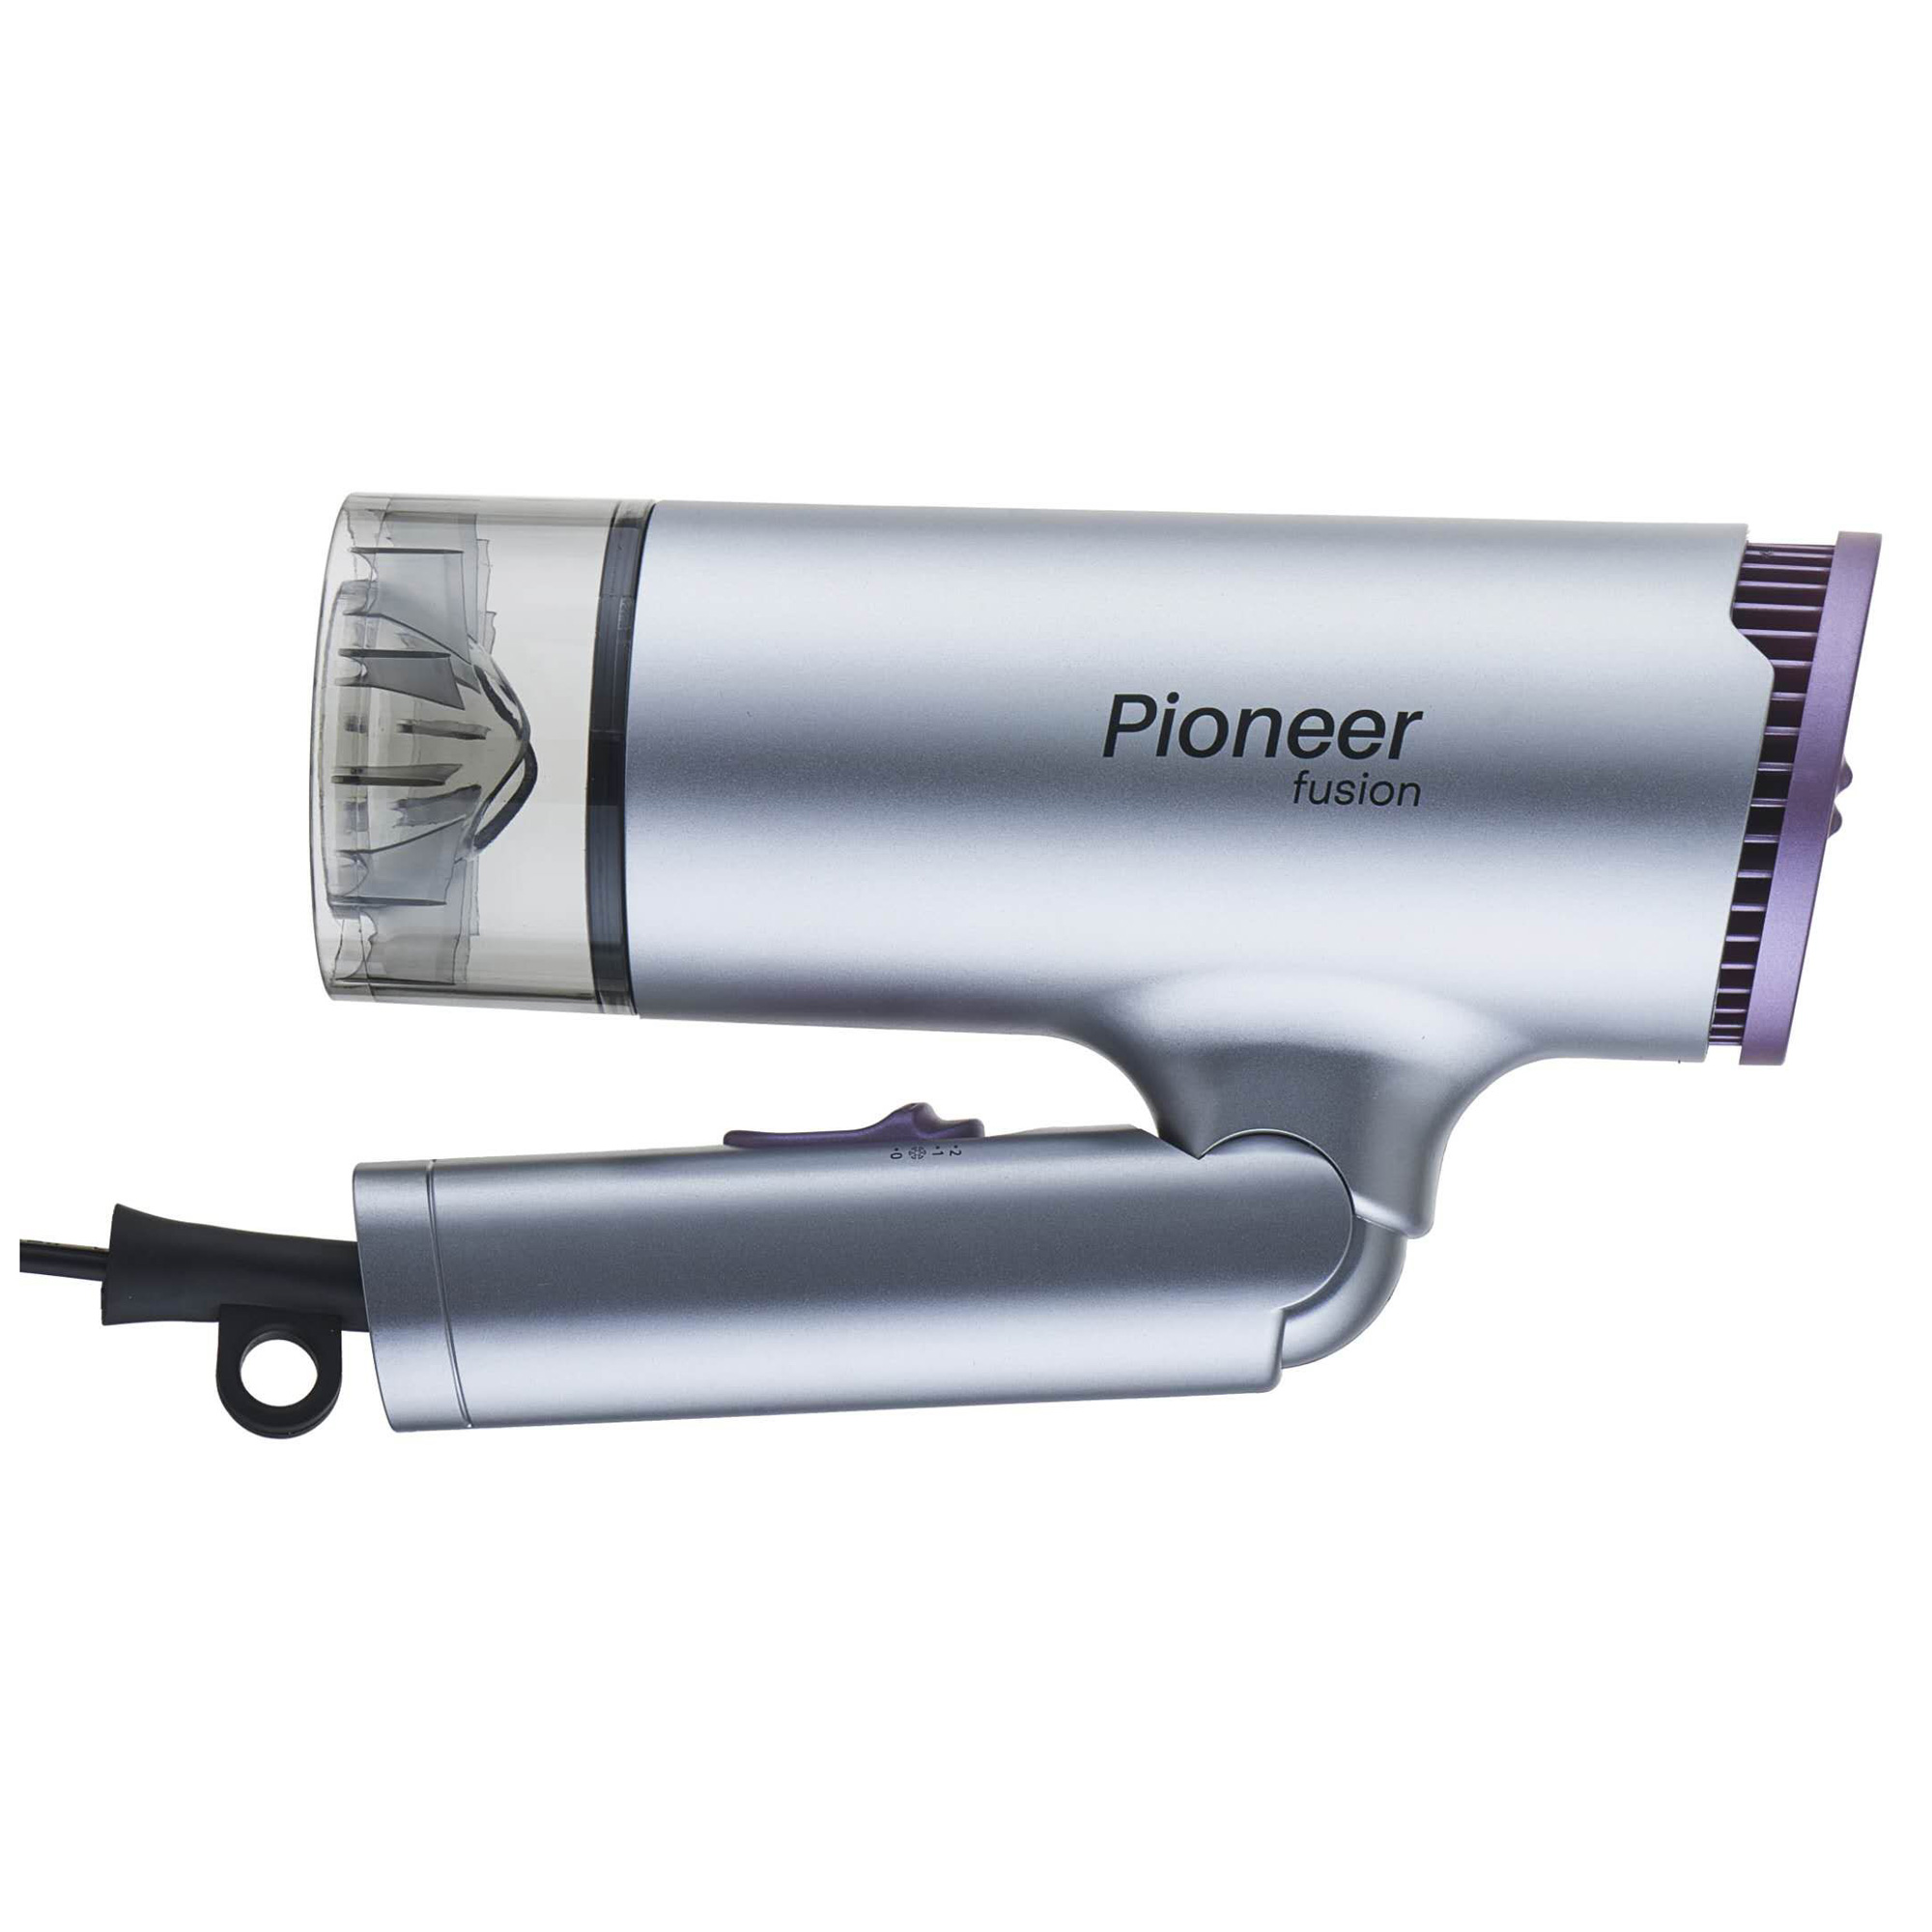 Фен Pioneer HD-1400